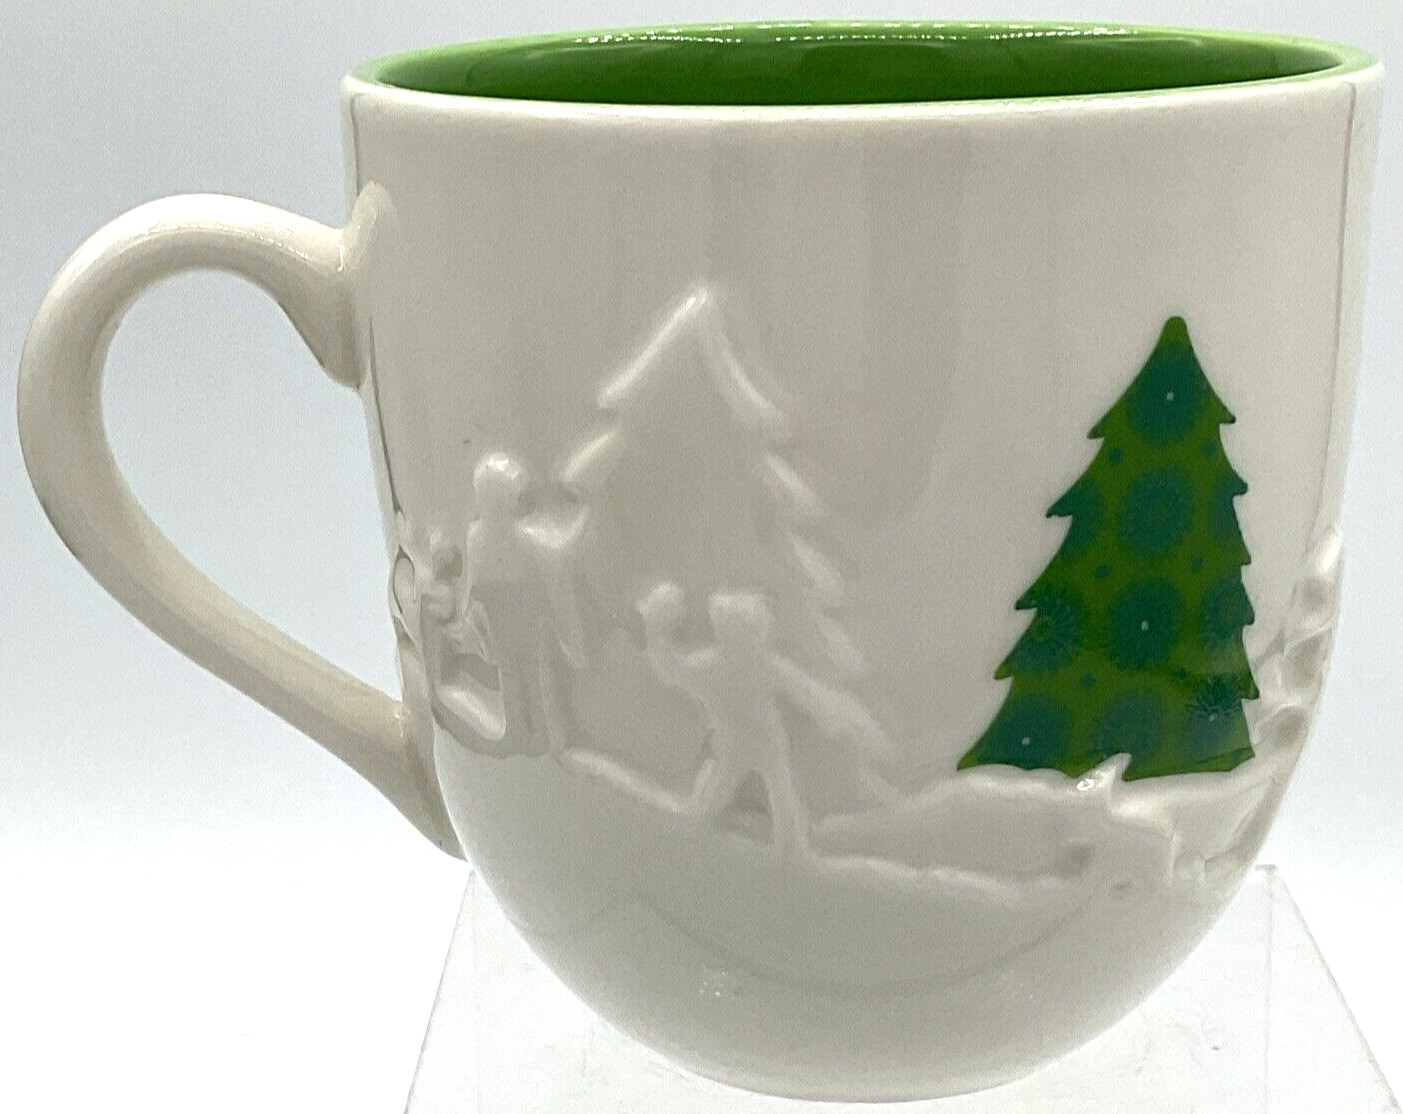 2006 Holiday Starbucks Coffee Mug 16 oz Christmas Green & White Tea Family